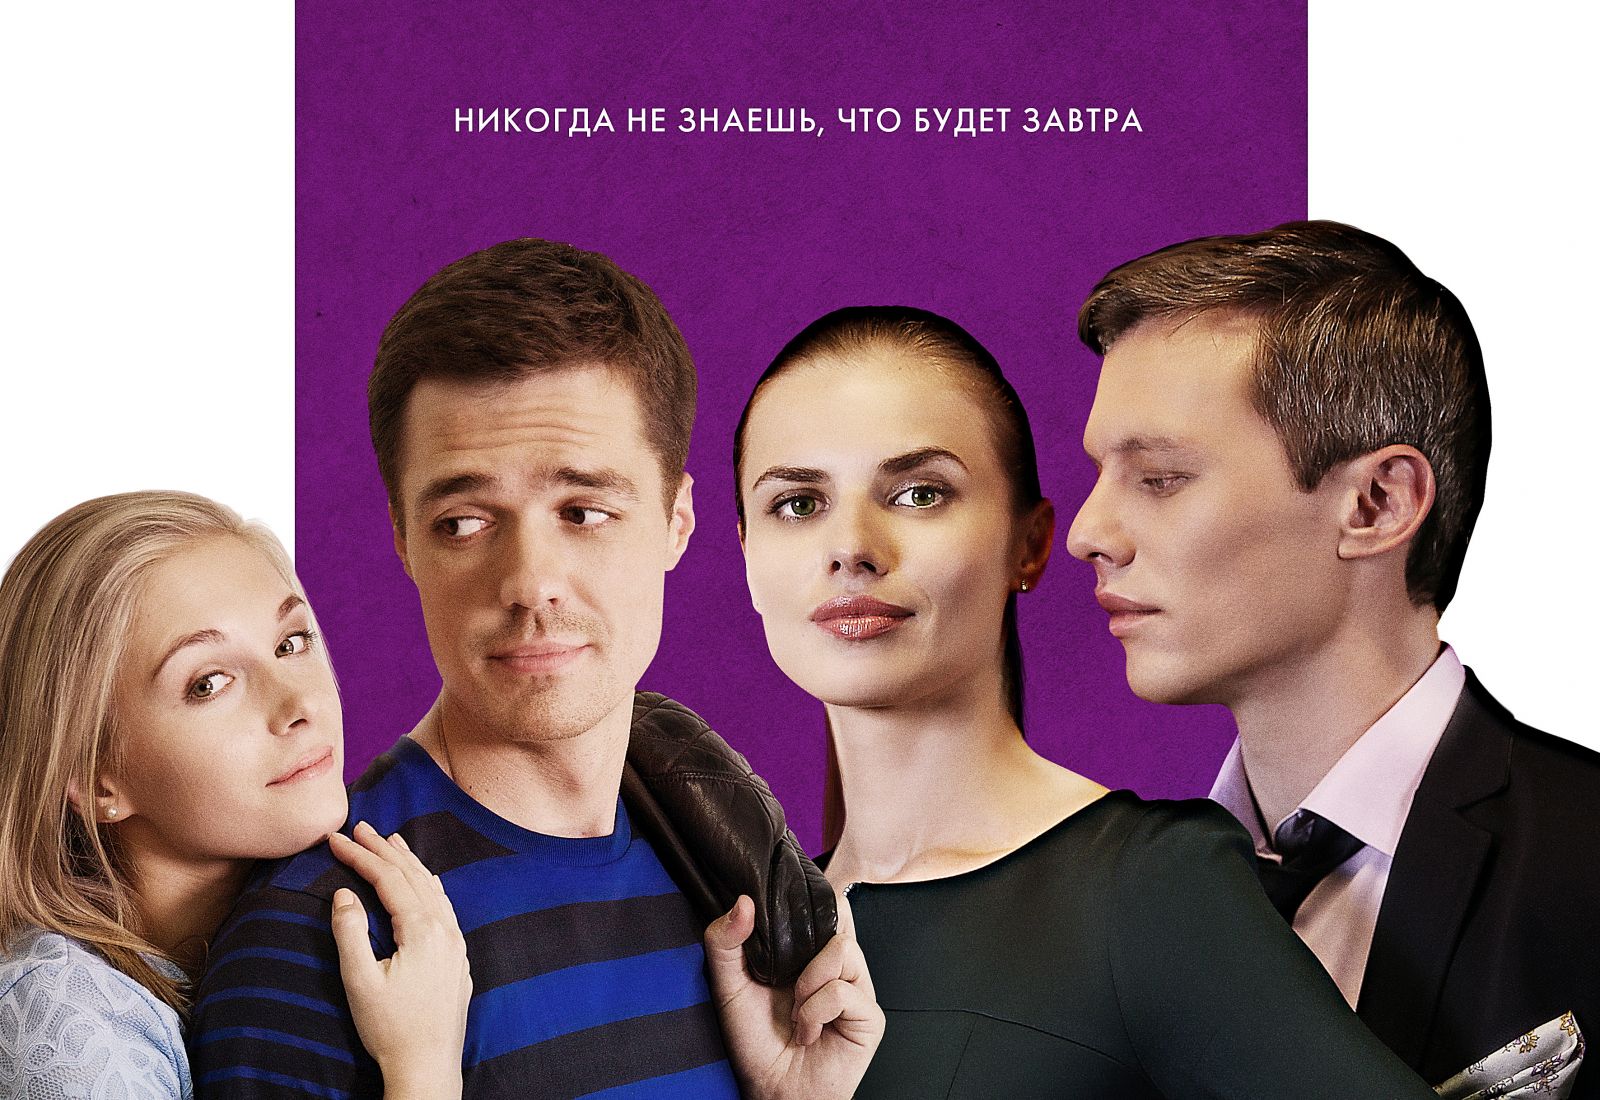 Сериал "Высокие отношения" на Kartina.TV